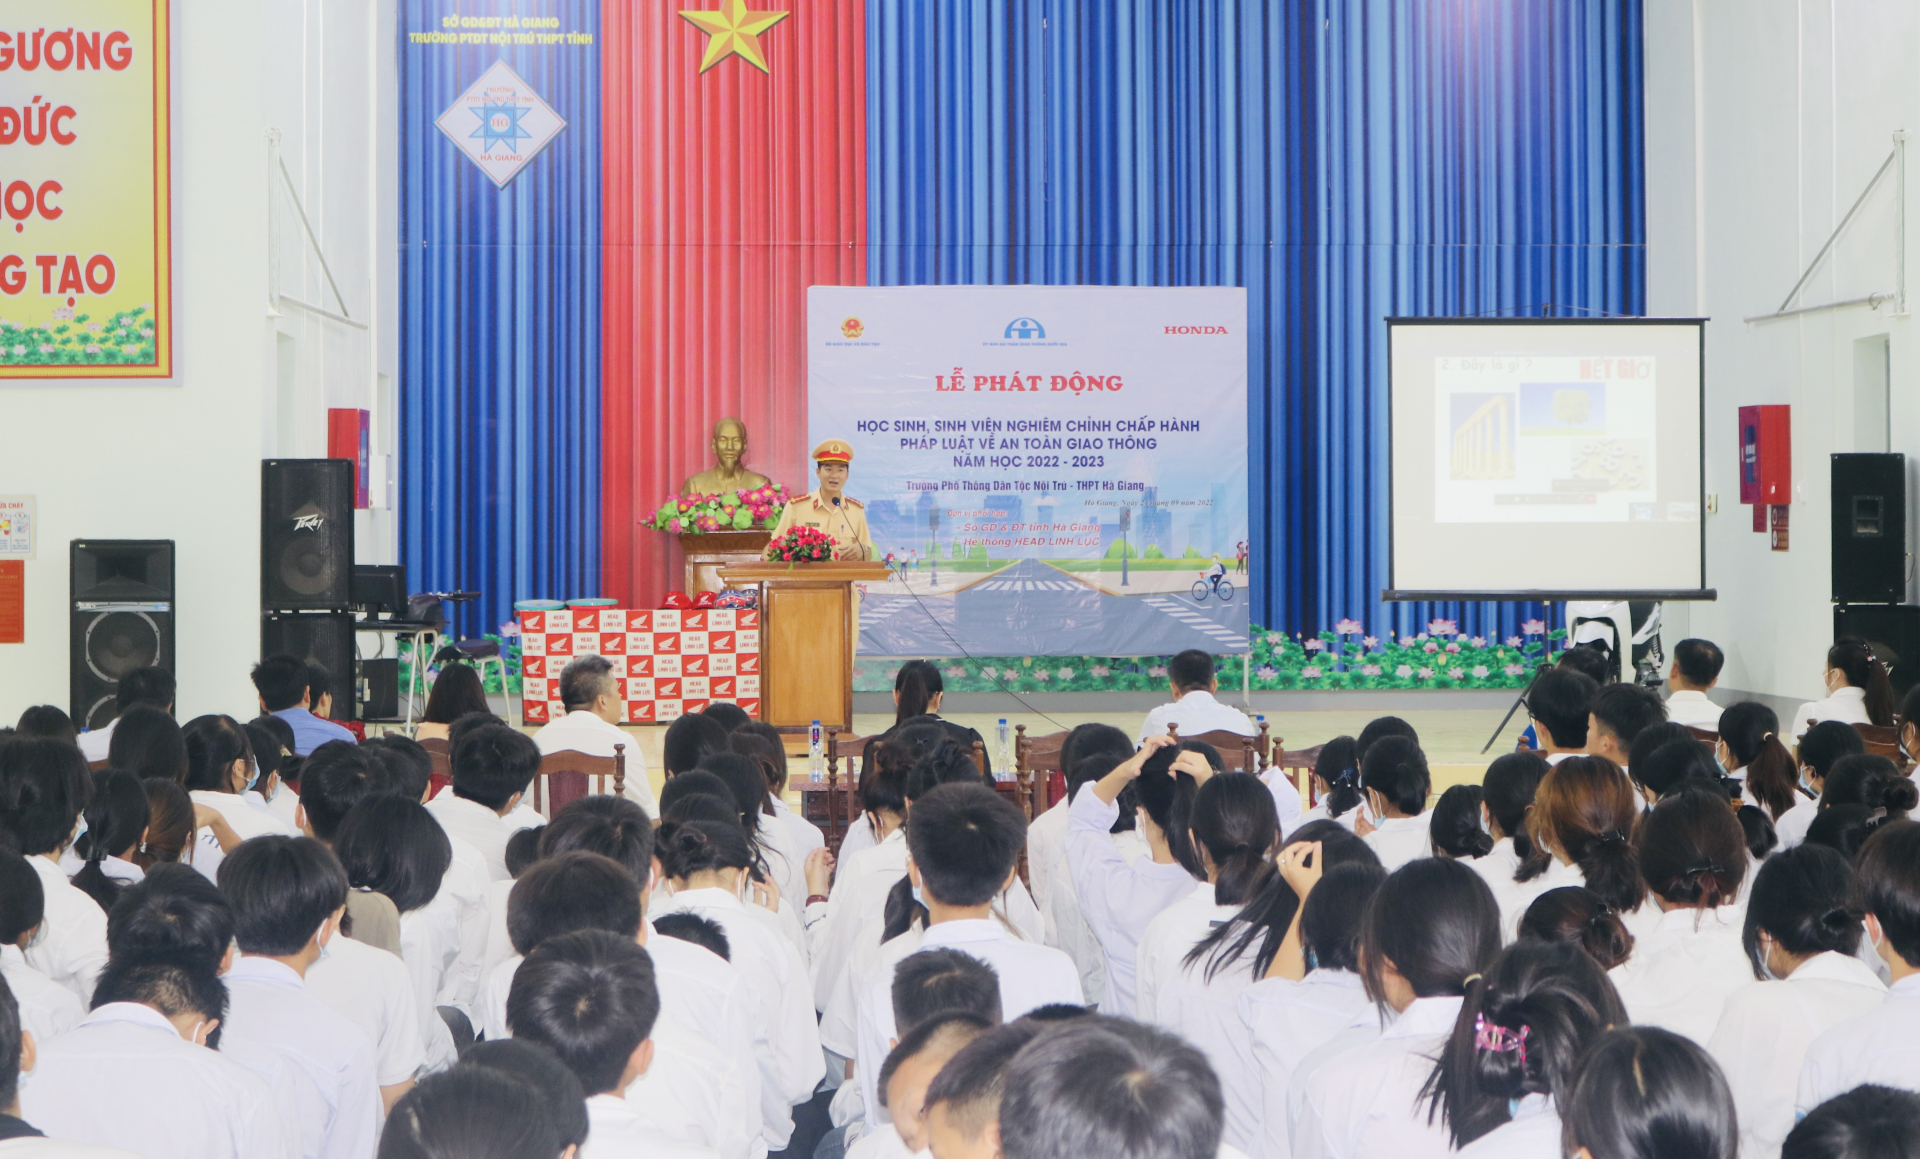 Toàn cảnh Lễ phát động học sinh, sinh viên nghiêm chỉnh chấp hành pháp luật về an toàn giao thông năm học 2022 - 2023 tại Hà Giang